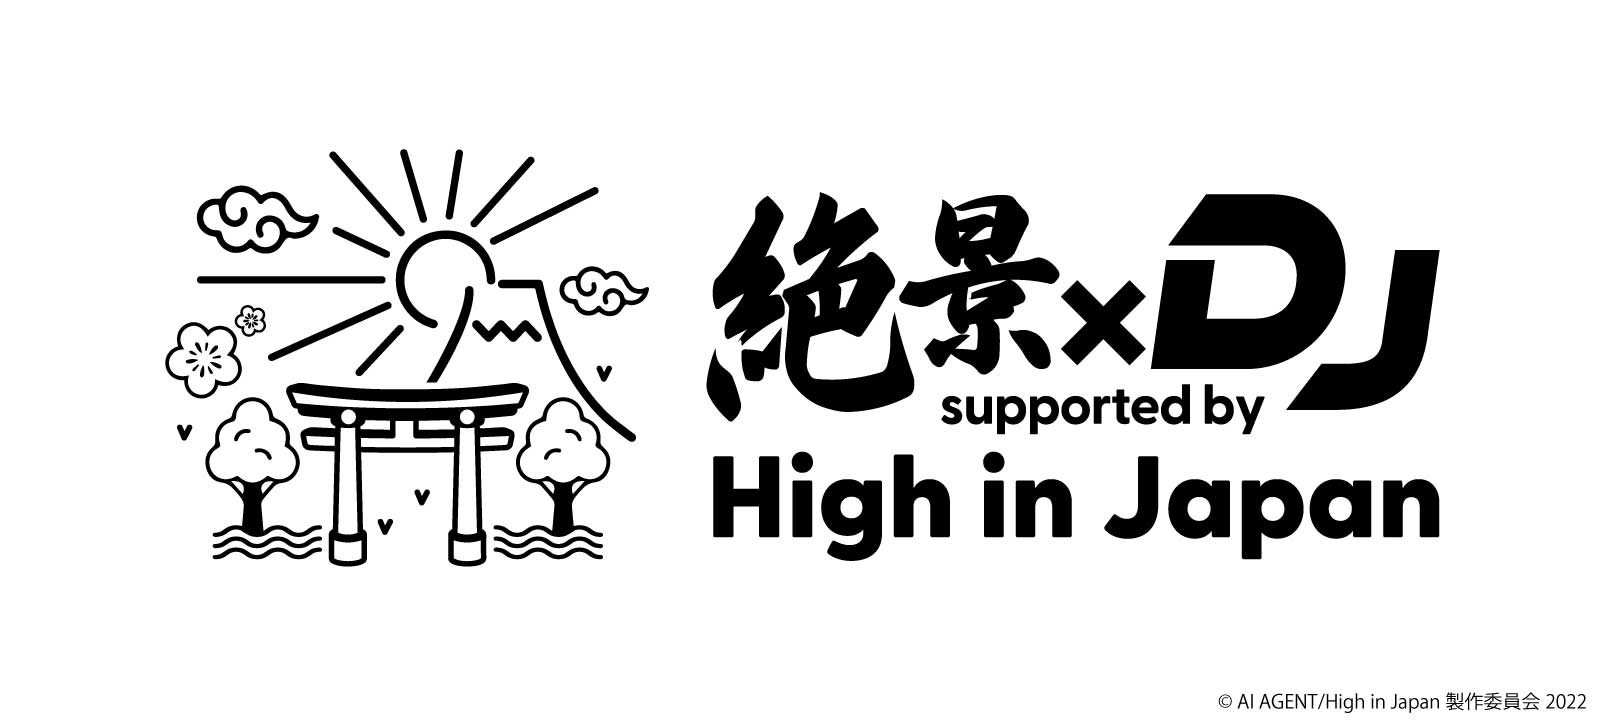 絶景×DJ Supported by High in Japan